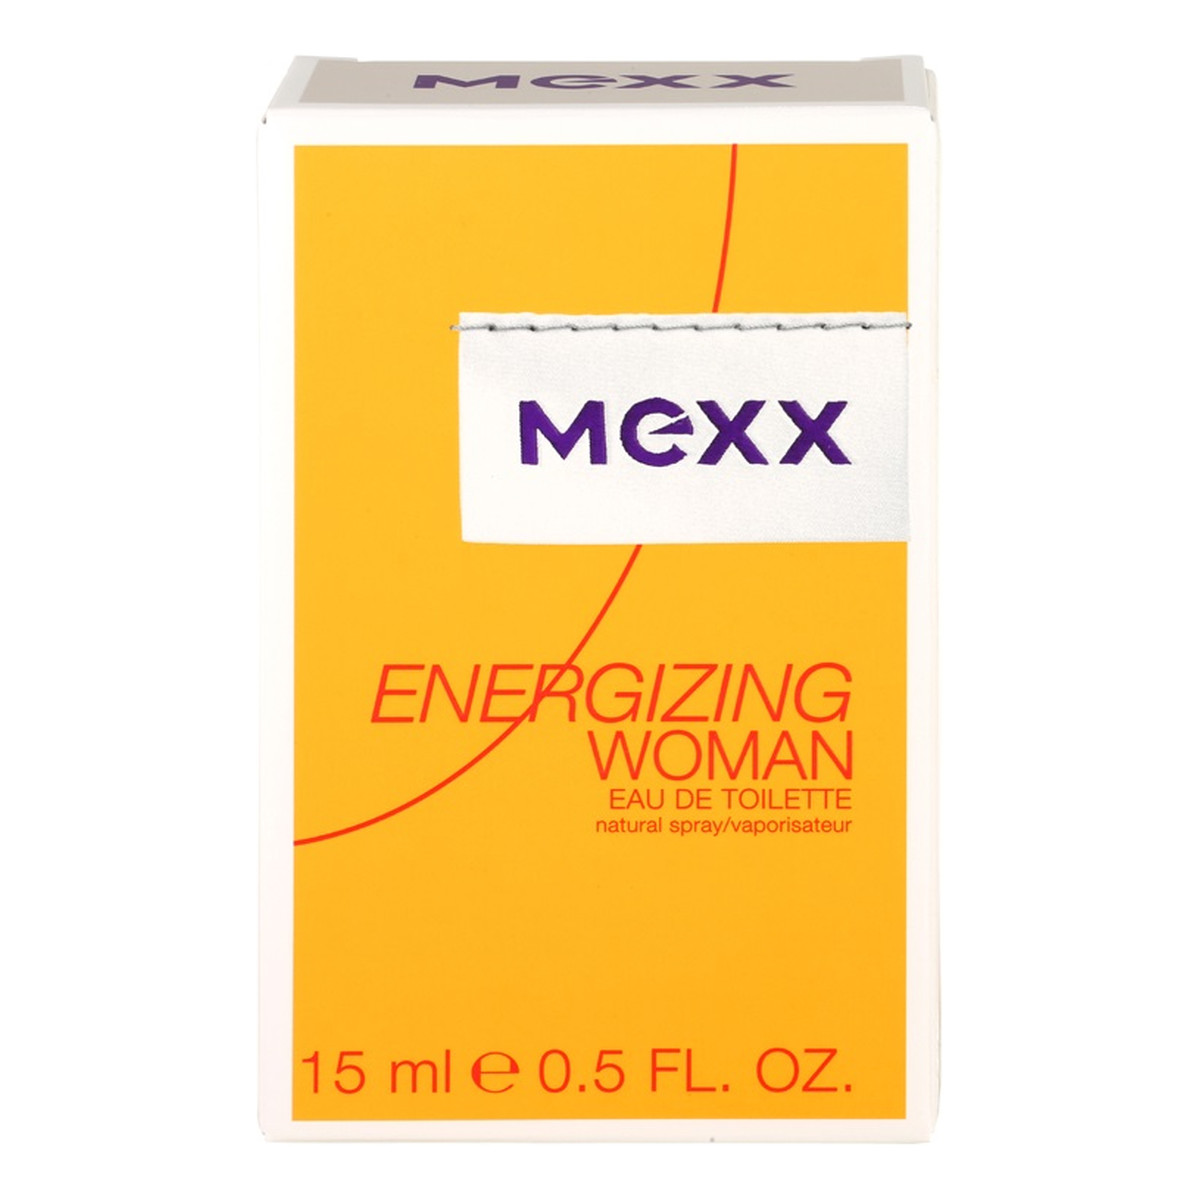 Mexx Energizing Woman woda toaletowa dla kobiet 15ml